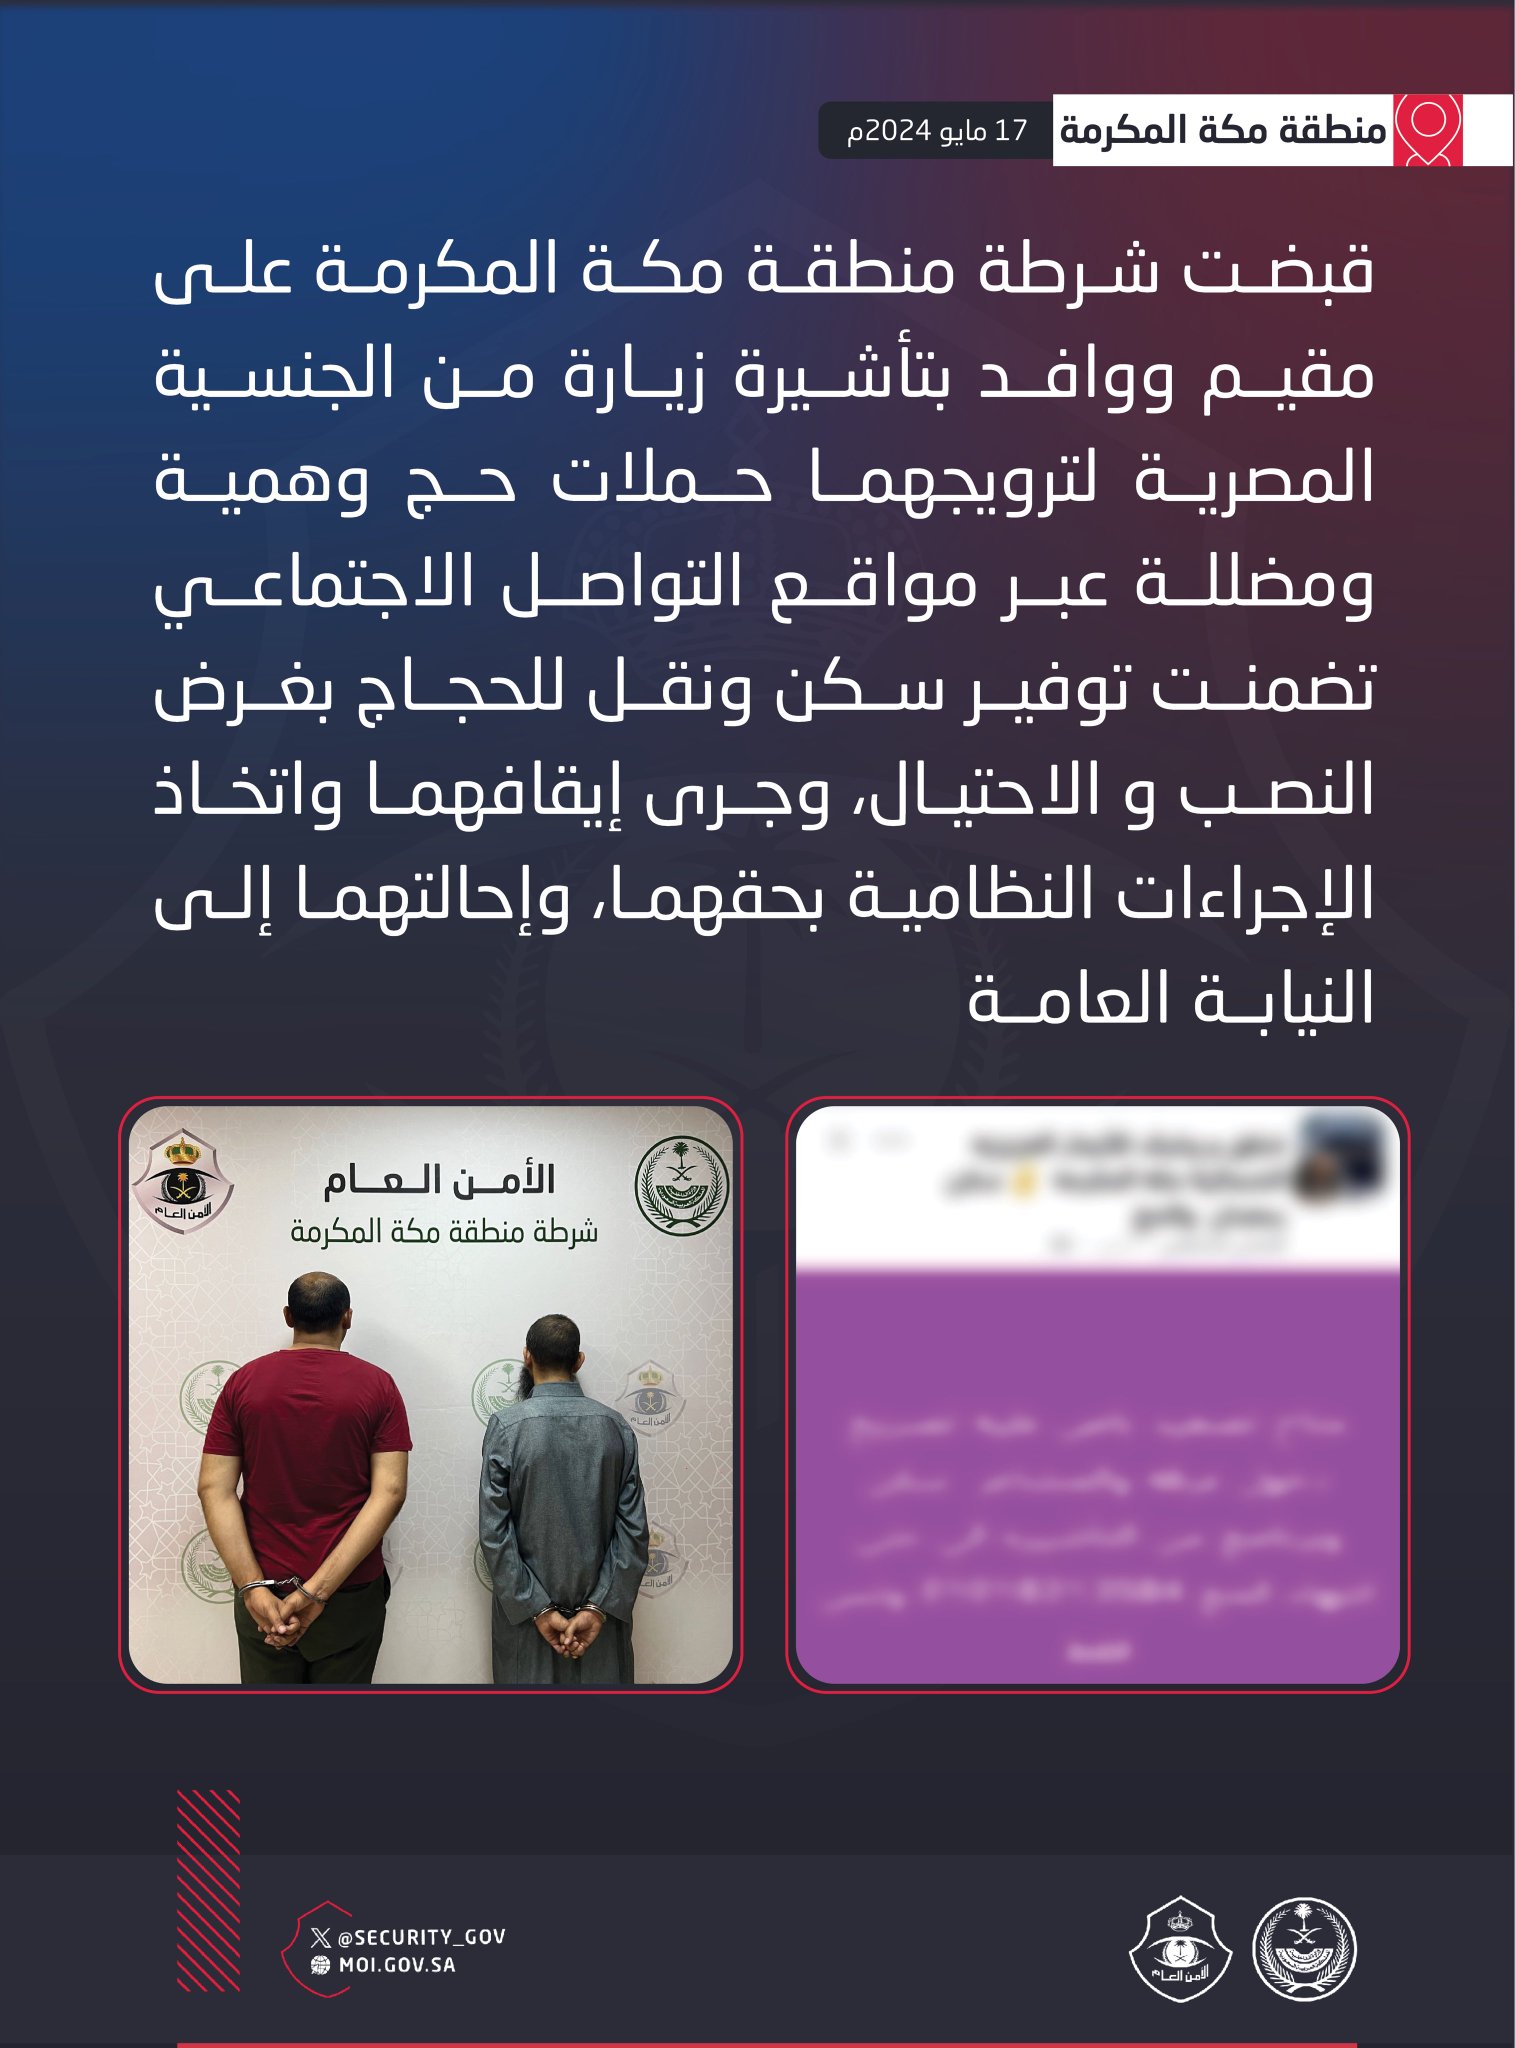 شرطة منطقة مكة المكرمة تقبض على مقيم ووافد بتأشيرة زيارة لترويجهما حملات حج وهمية ومضللة بتوفير سكن ونقل للحجاج بغرض النصب والاحتيال 